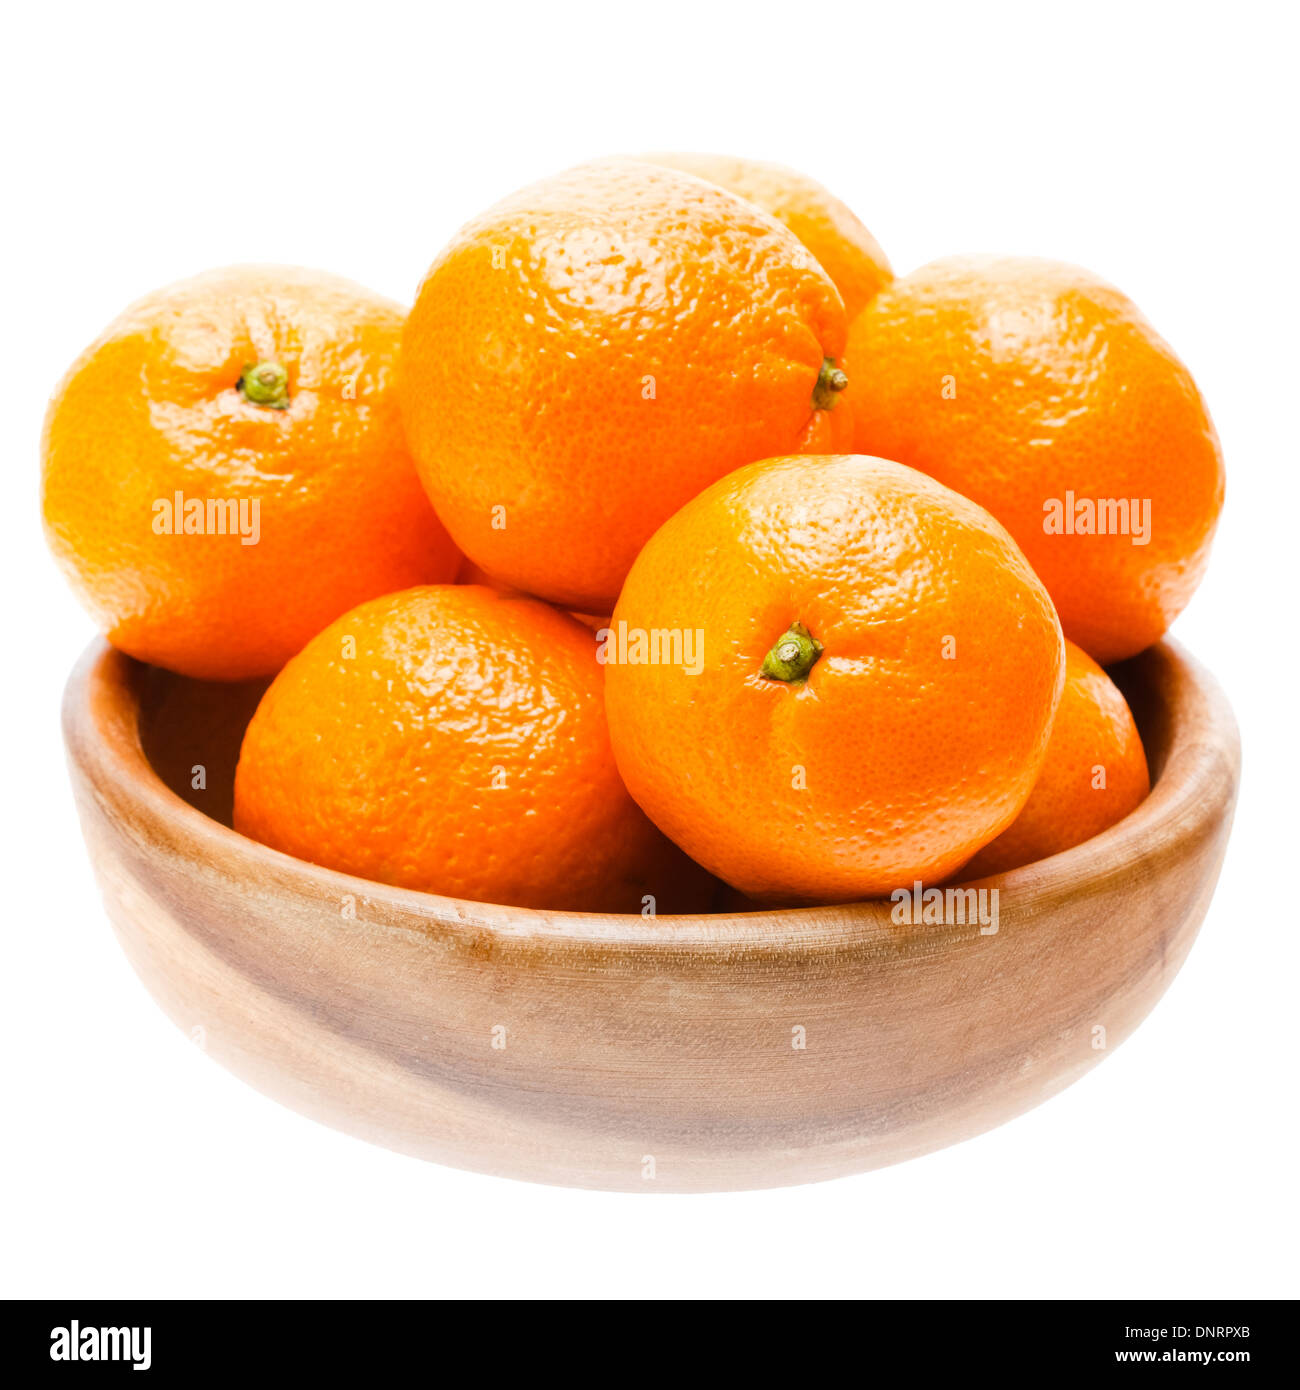 https://c8.alamy.com/comp/DNRPXB/tasty-sweet-tangerine-orange-mandarin-mandarine-fruit-in-wooden-bowl-DNRPXB.jpg